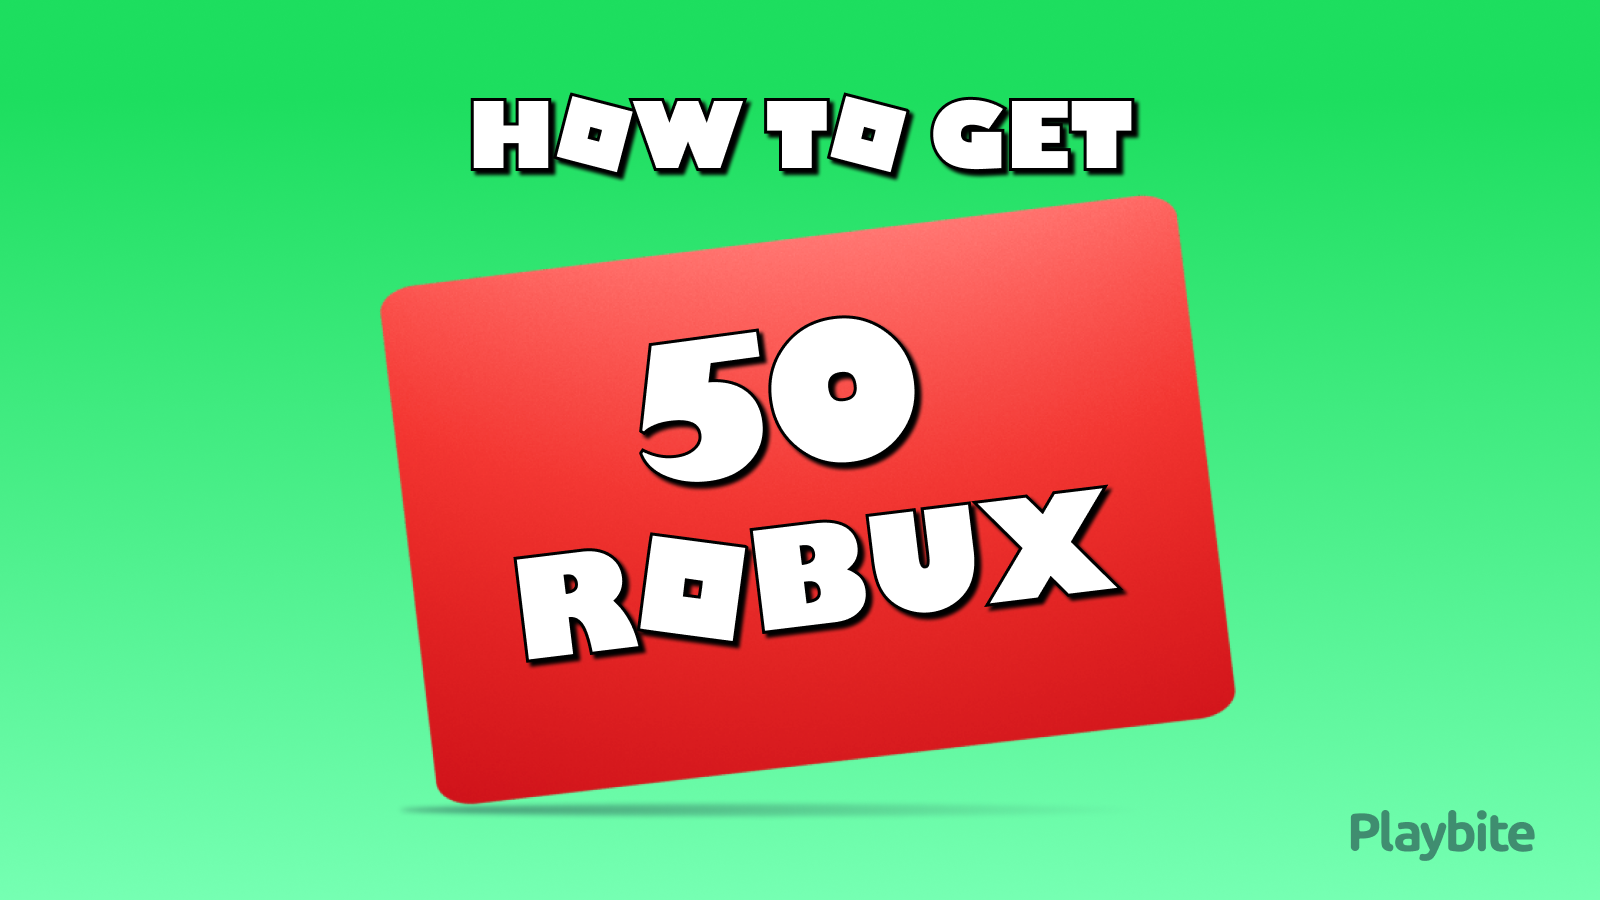 Cómo conseguir robux gratis en Roblox fácil y rápido